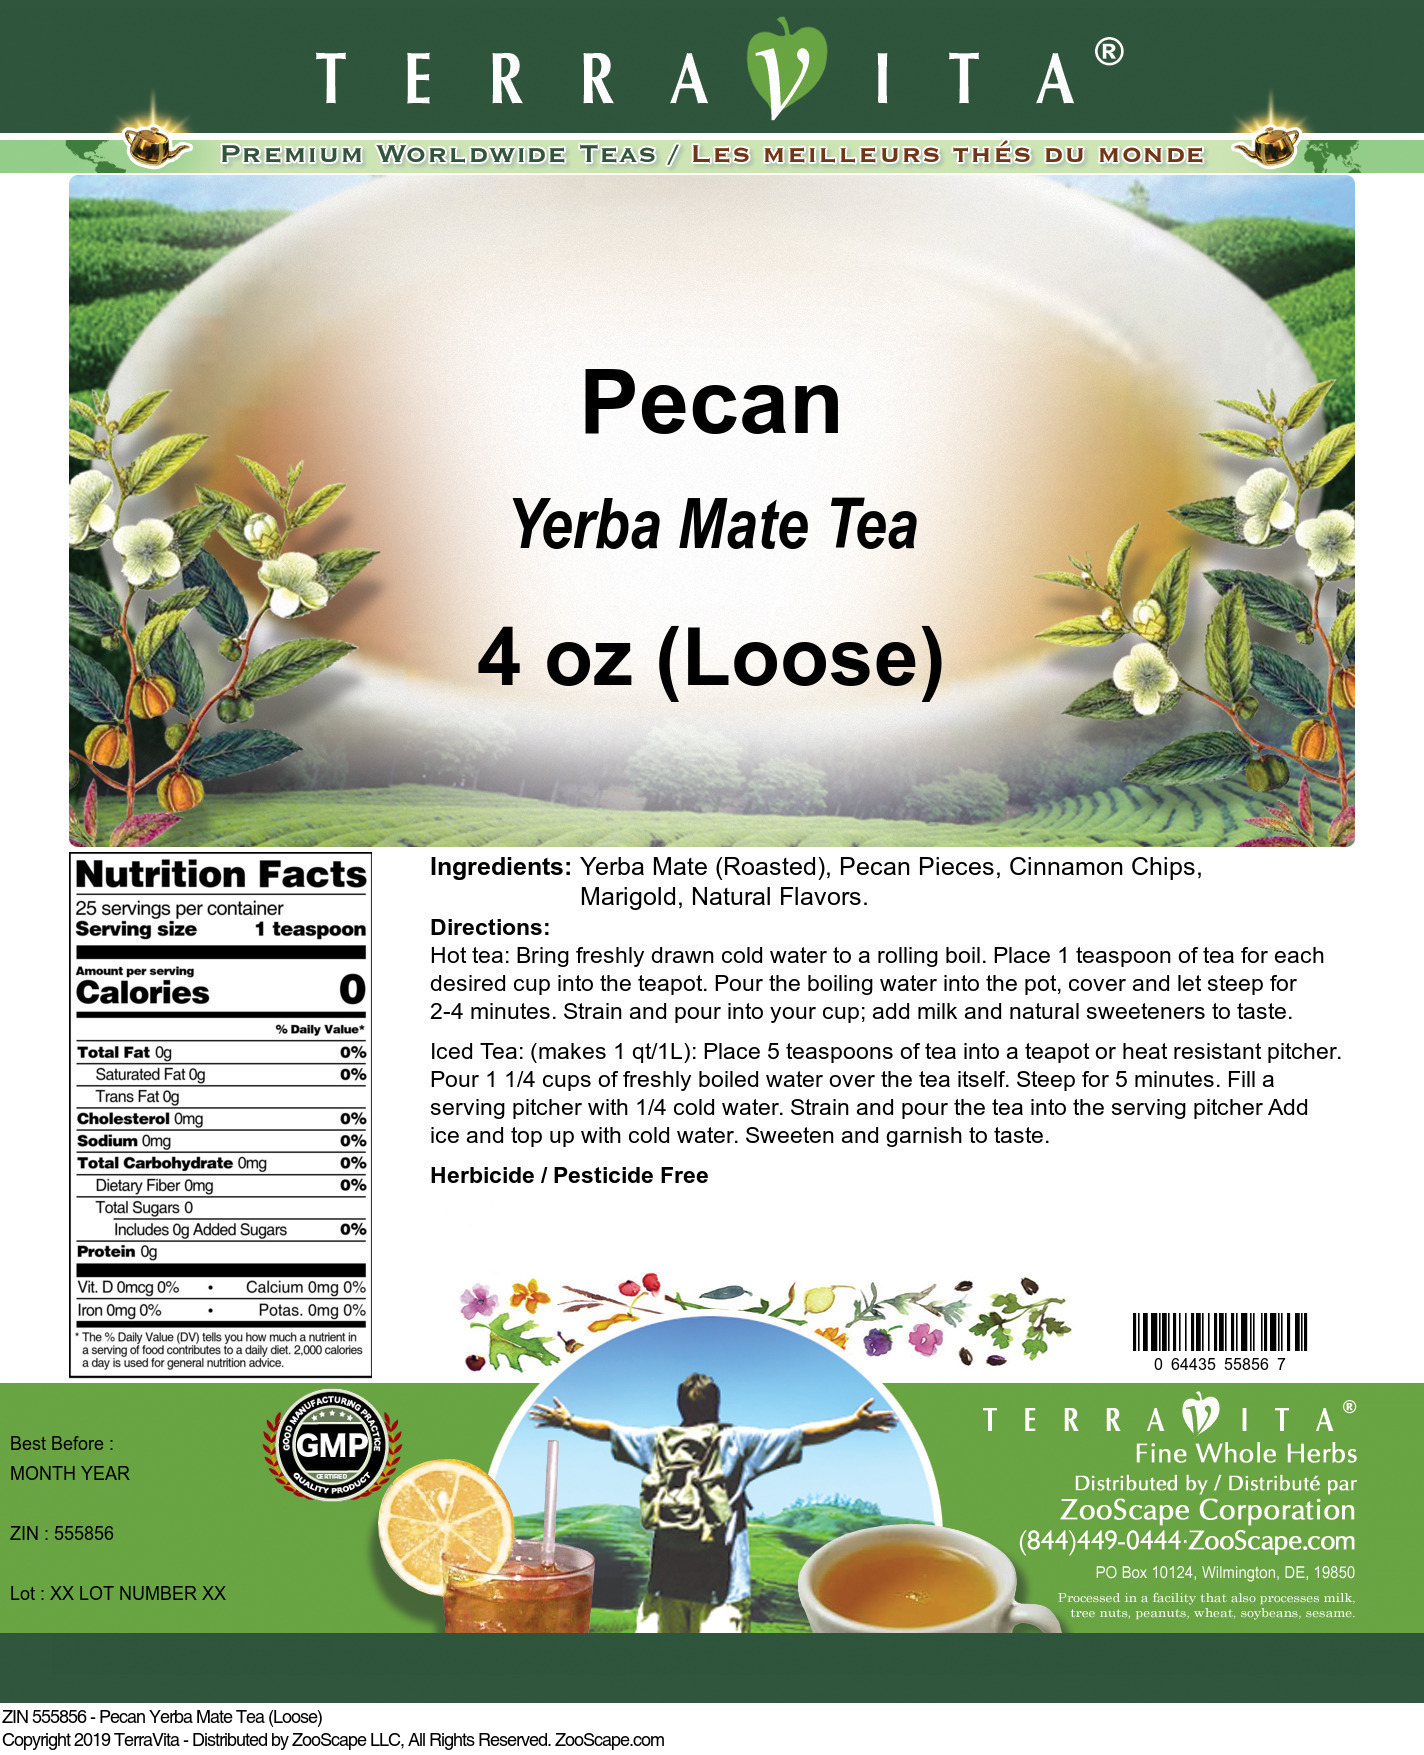 Pecan Yerba Mate Tea (Loose) - Label